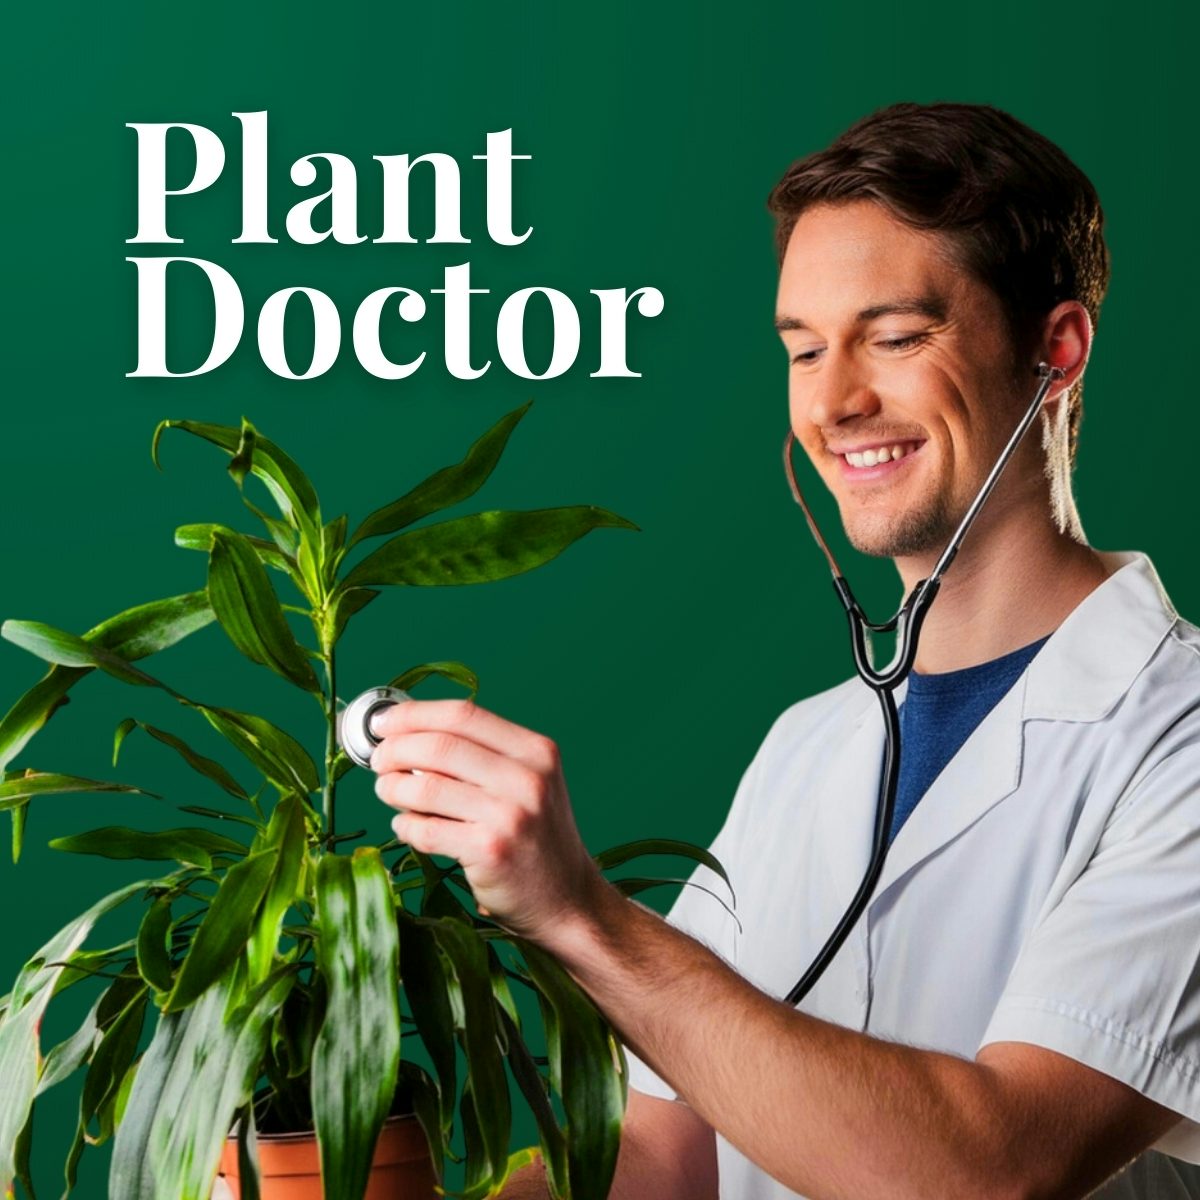 Plant doctor - recibe ayuda con tus plantas